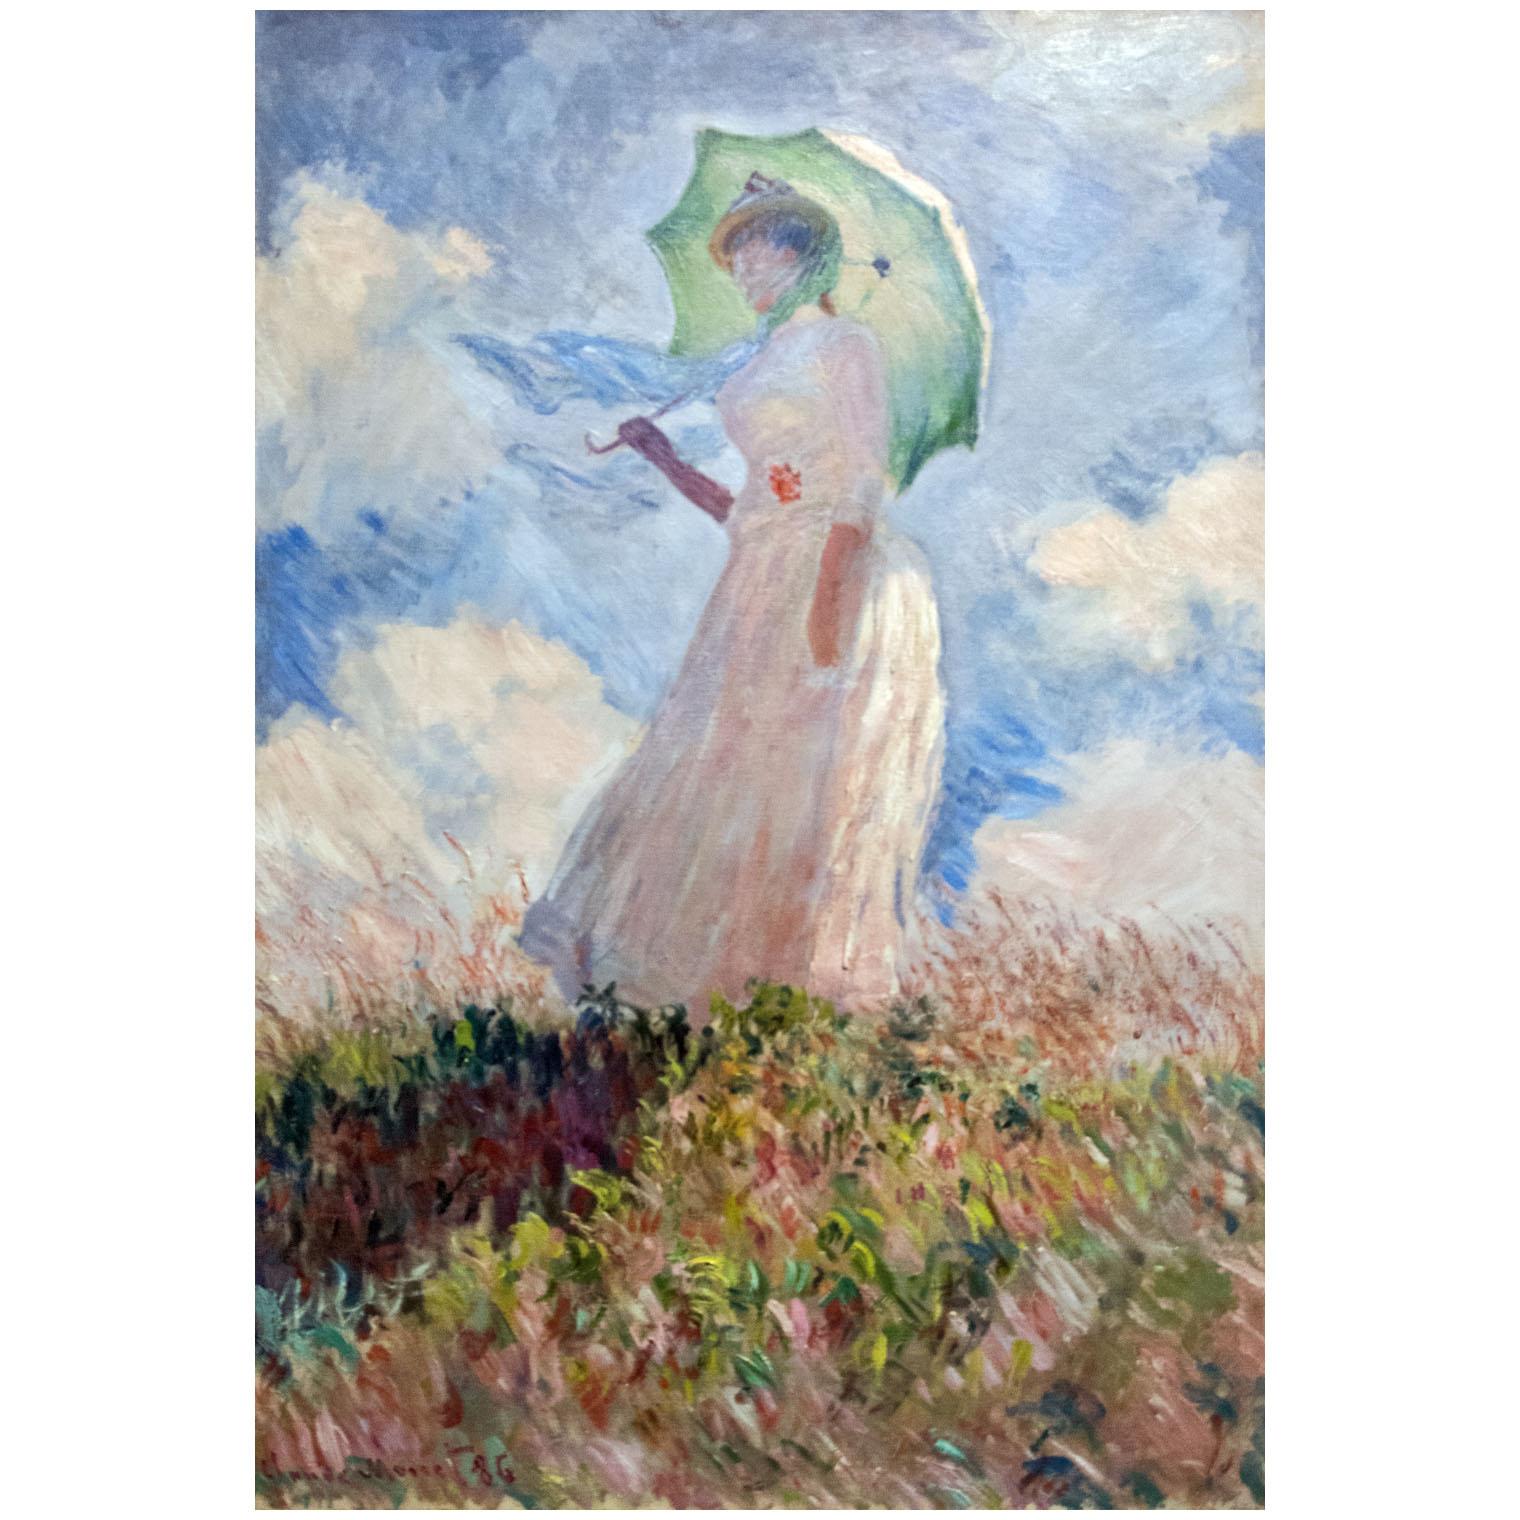 Claude Monet. Femme à l'ombrelle. 1886. Musee d’Orsay Paris